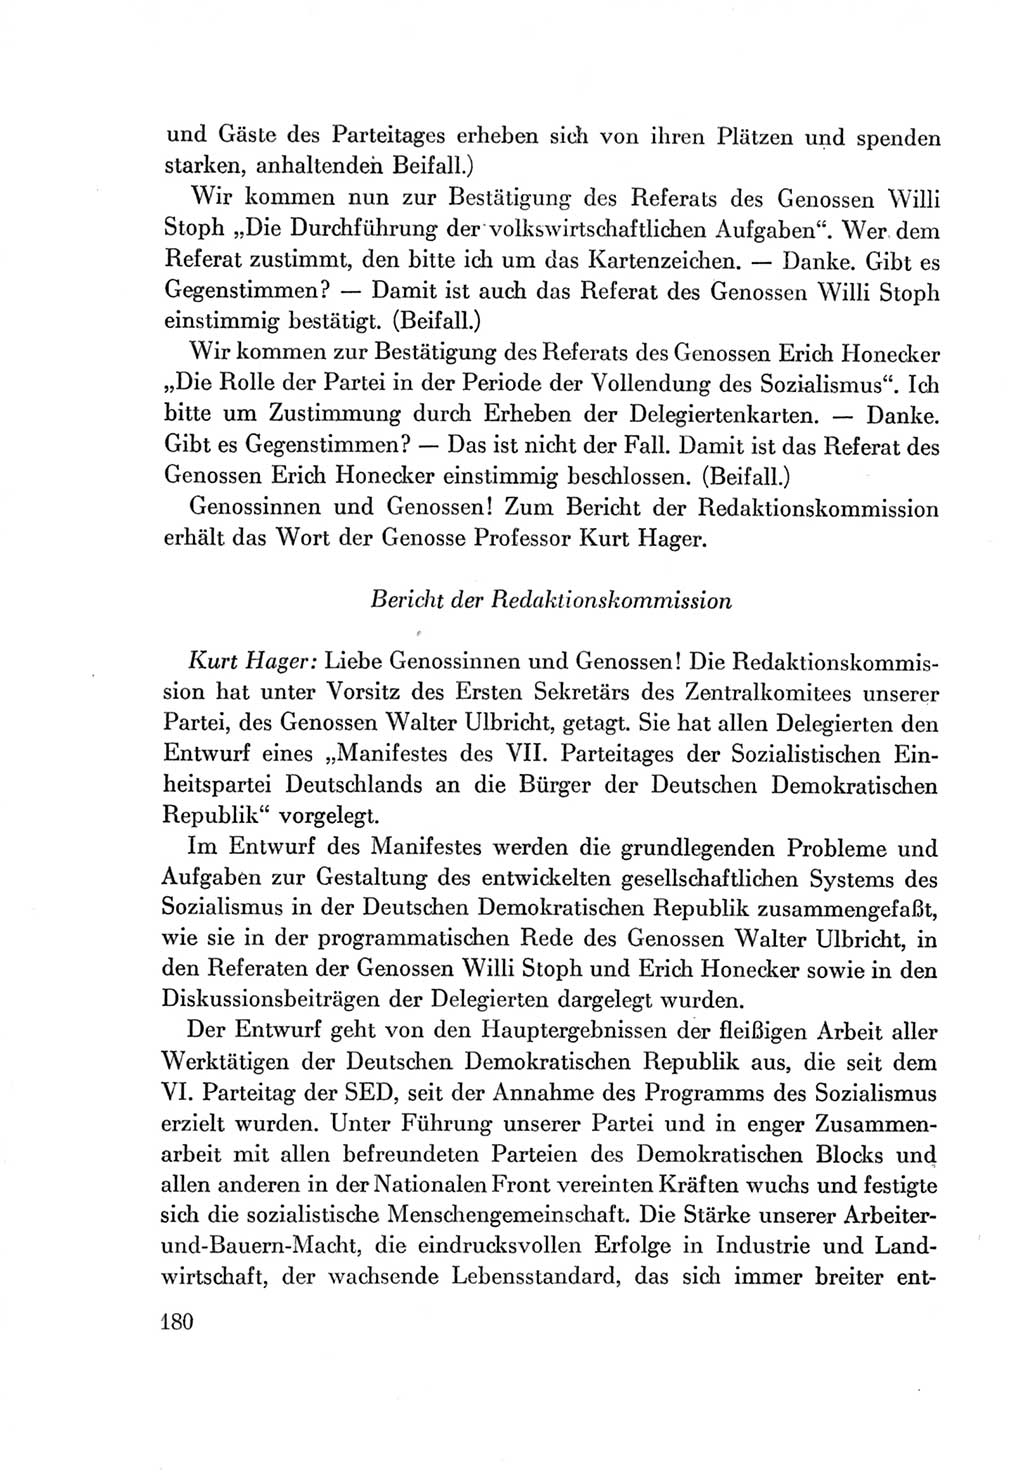 Protokoll der Verhandlungen des Ⅶ. Parteitages der Sozialistischen Einheitspartei Deutschlands (SED) [Deutsche Demokratische Republik (DDR)] 1967, Band Ⅱ, Seite 180 (Prot. Verh. Ⅶ. PT SED DDR 1967, Bd. Ⅱ, S. 180)